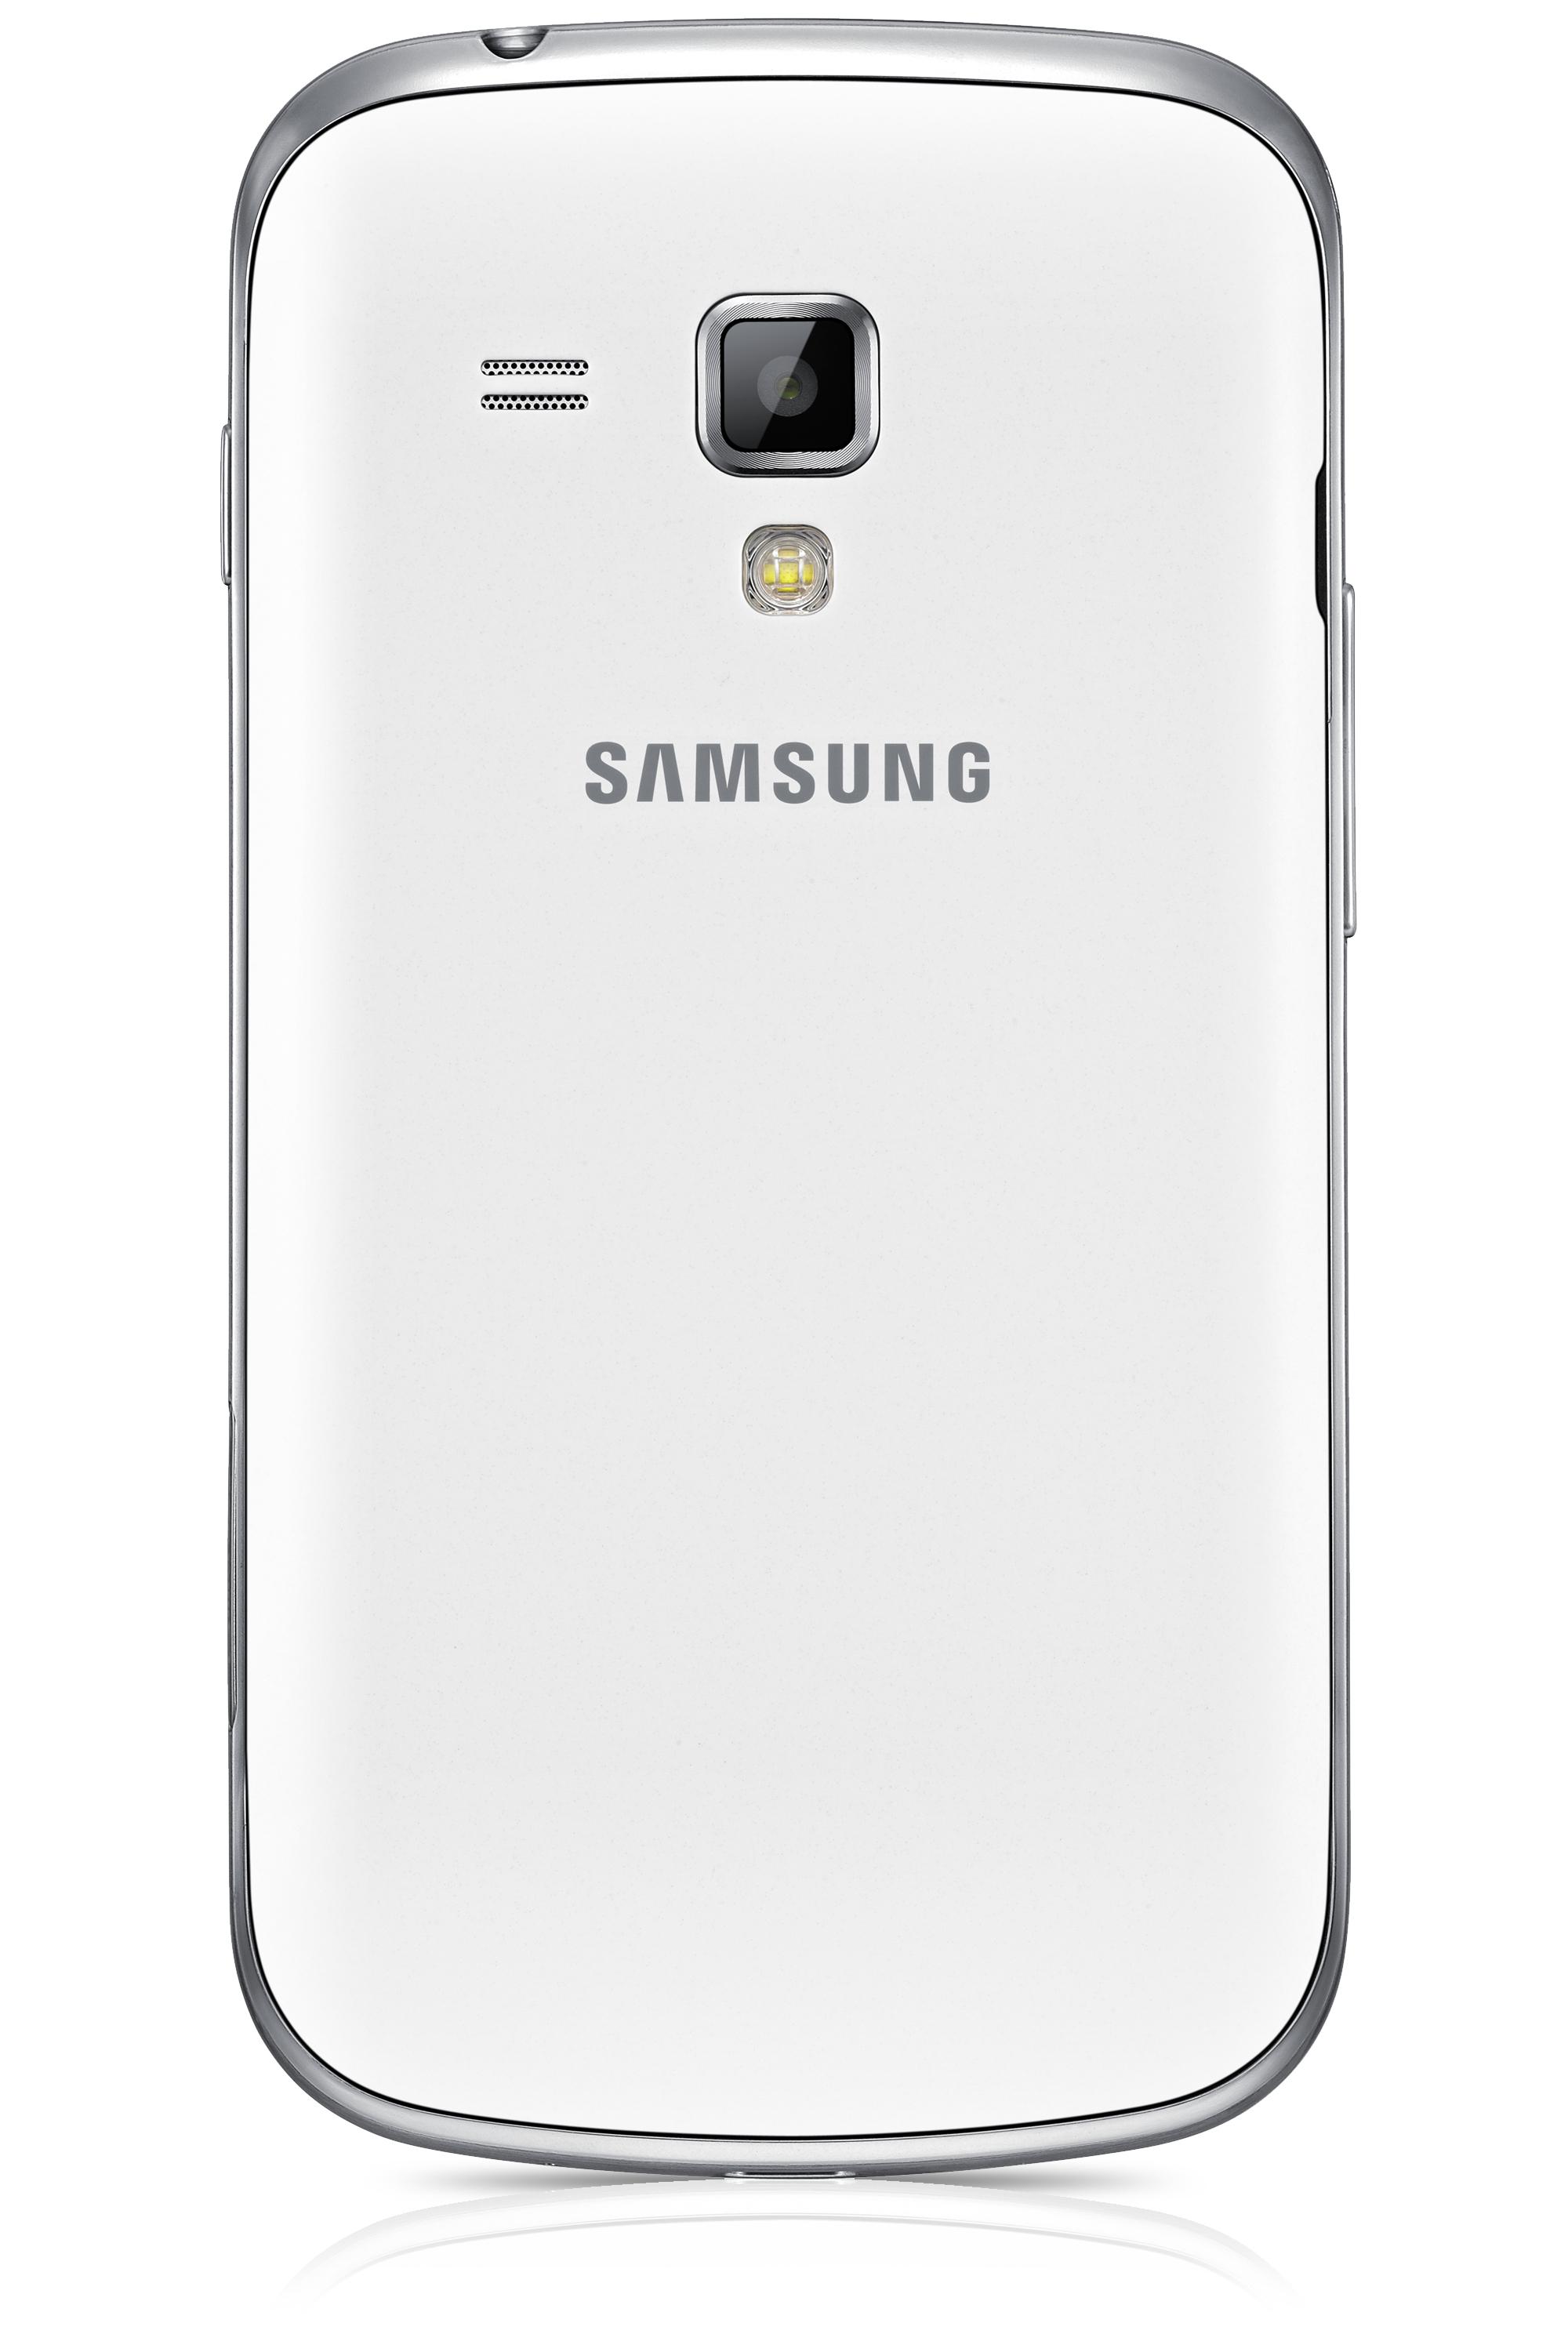 Foto Samsung Galaxy S Duos S7562